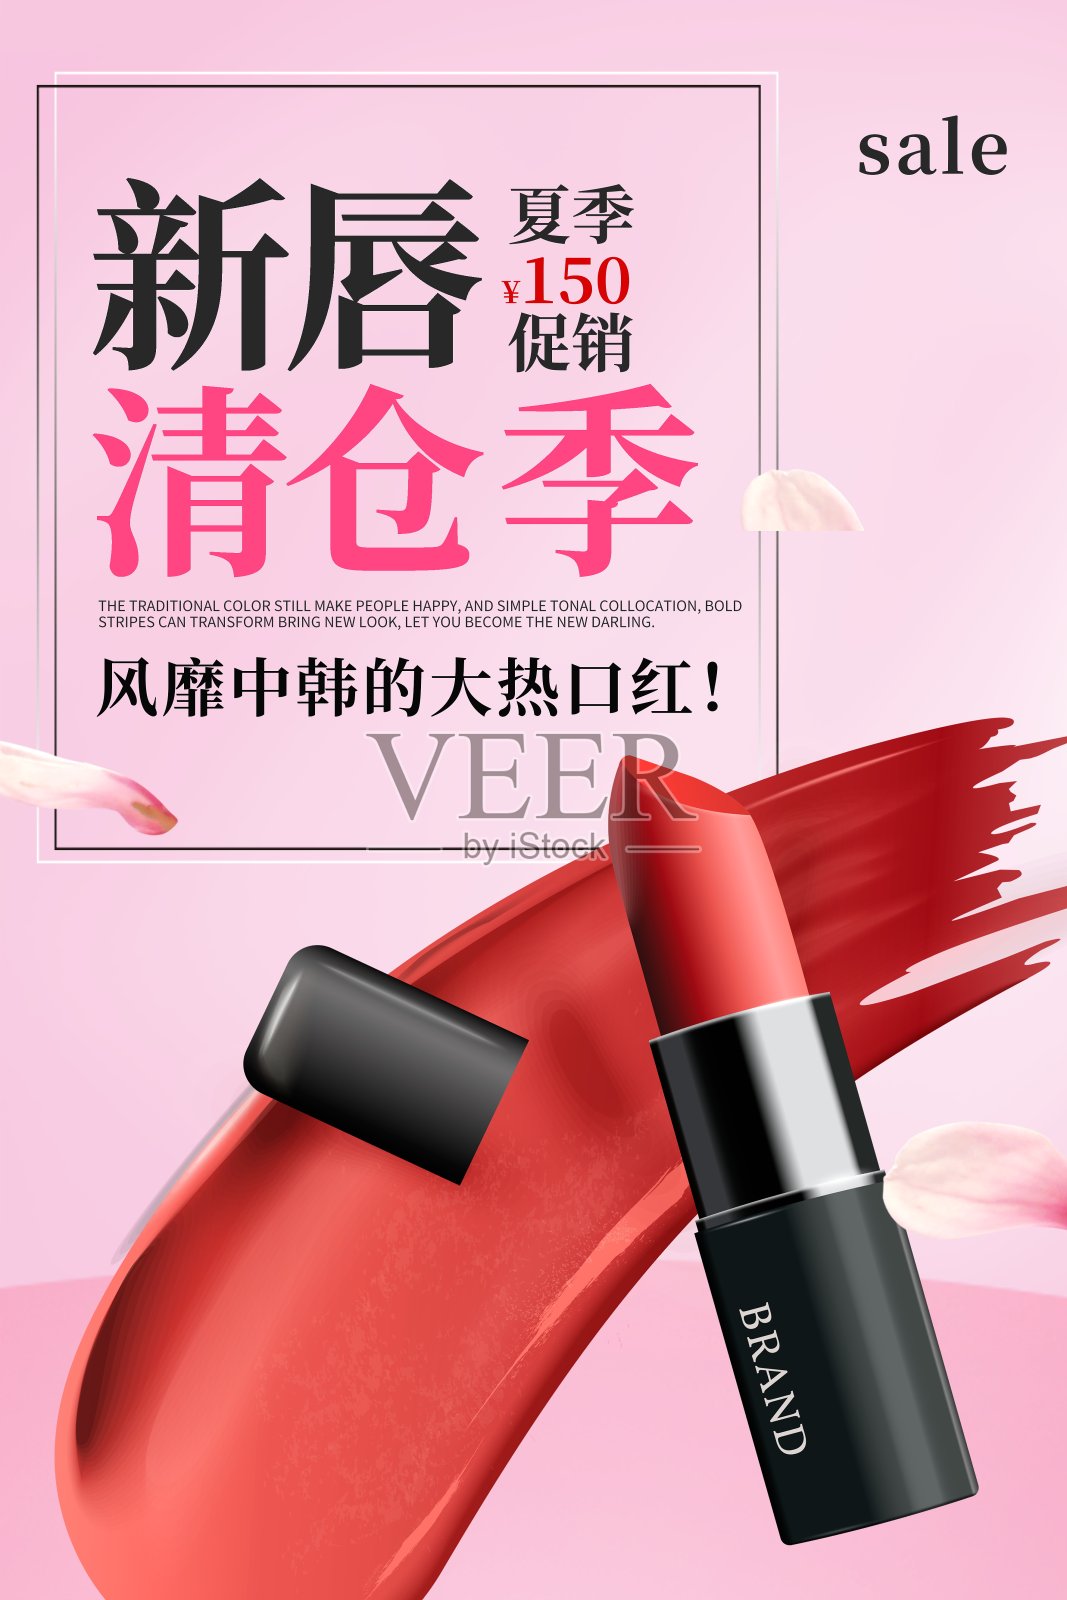 时尚口红美妆品促销海报设计模板素材